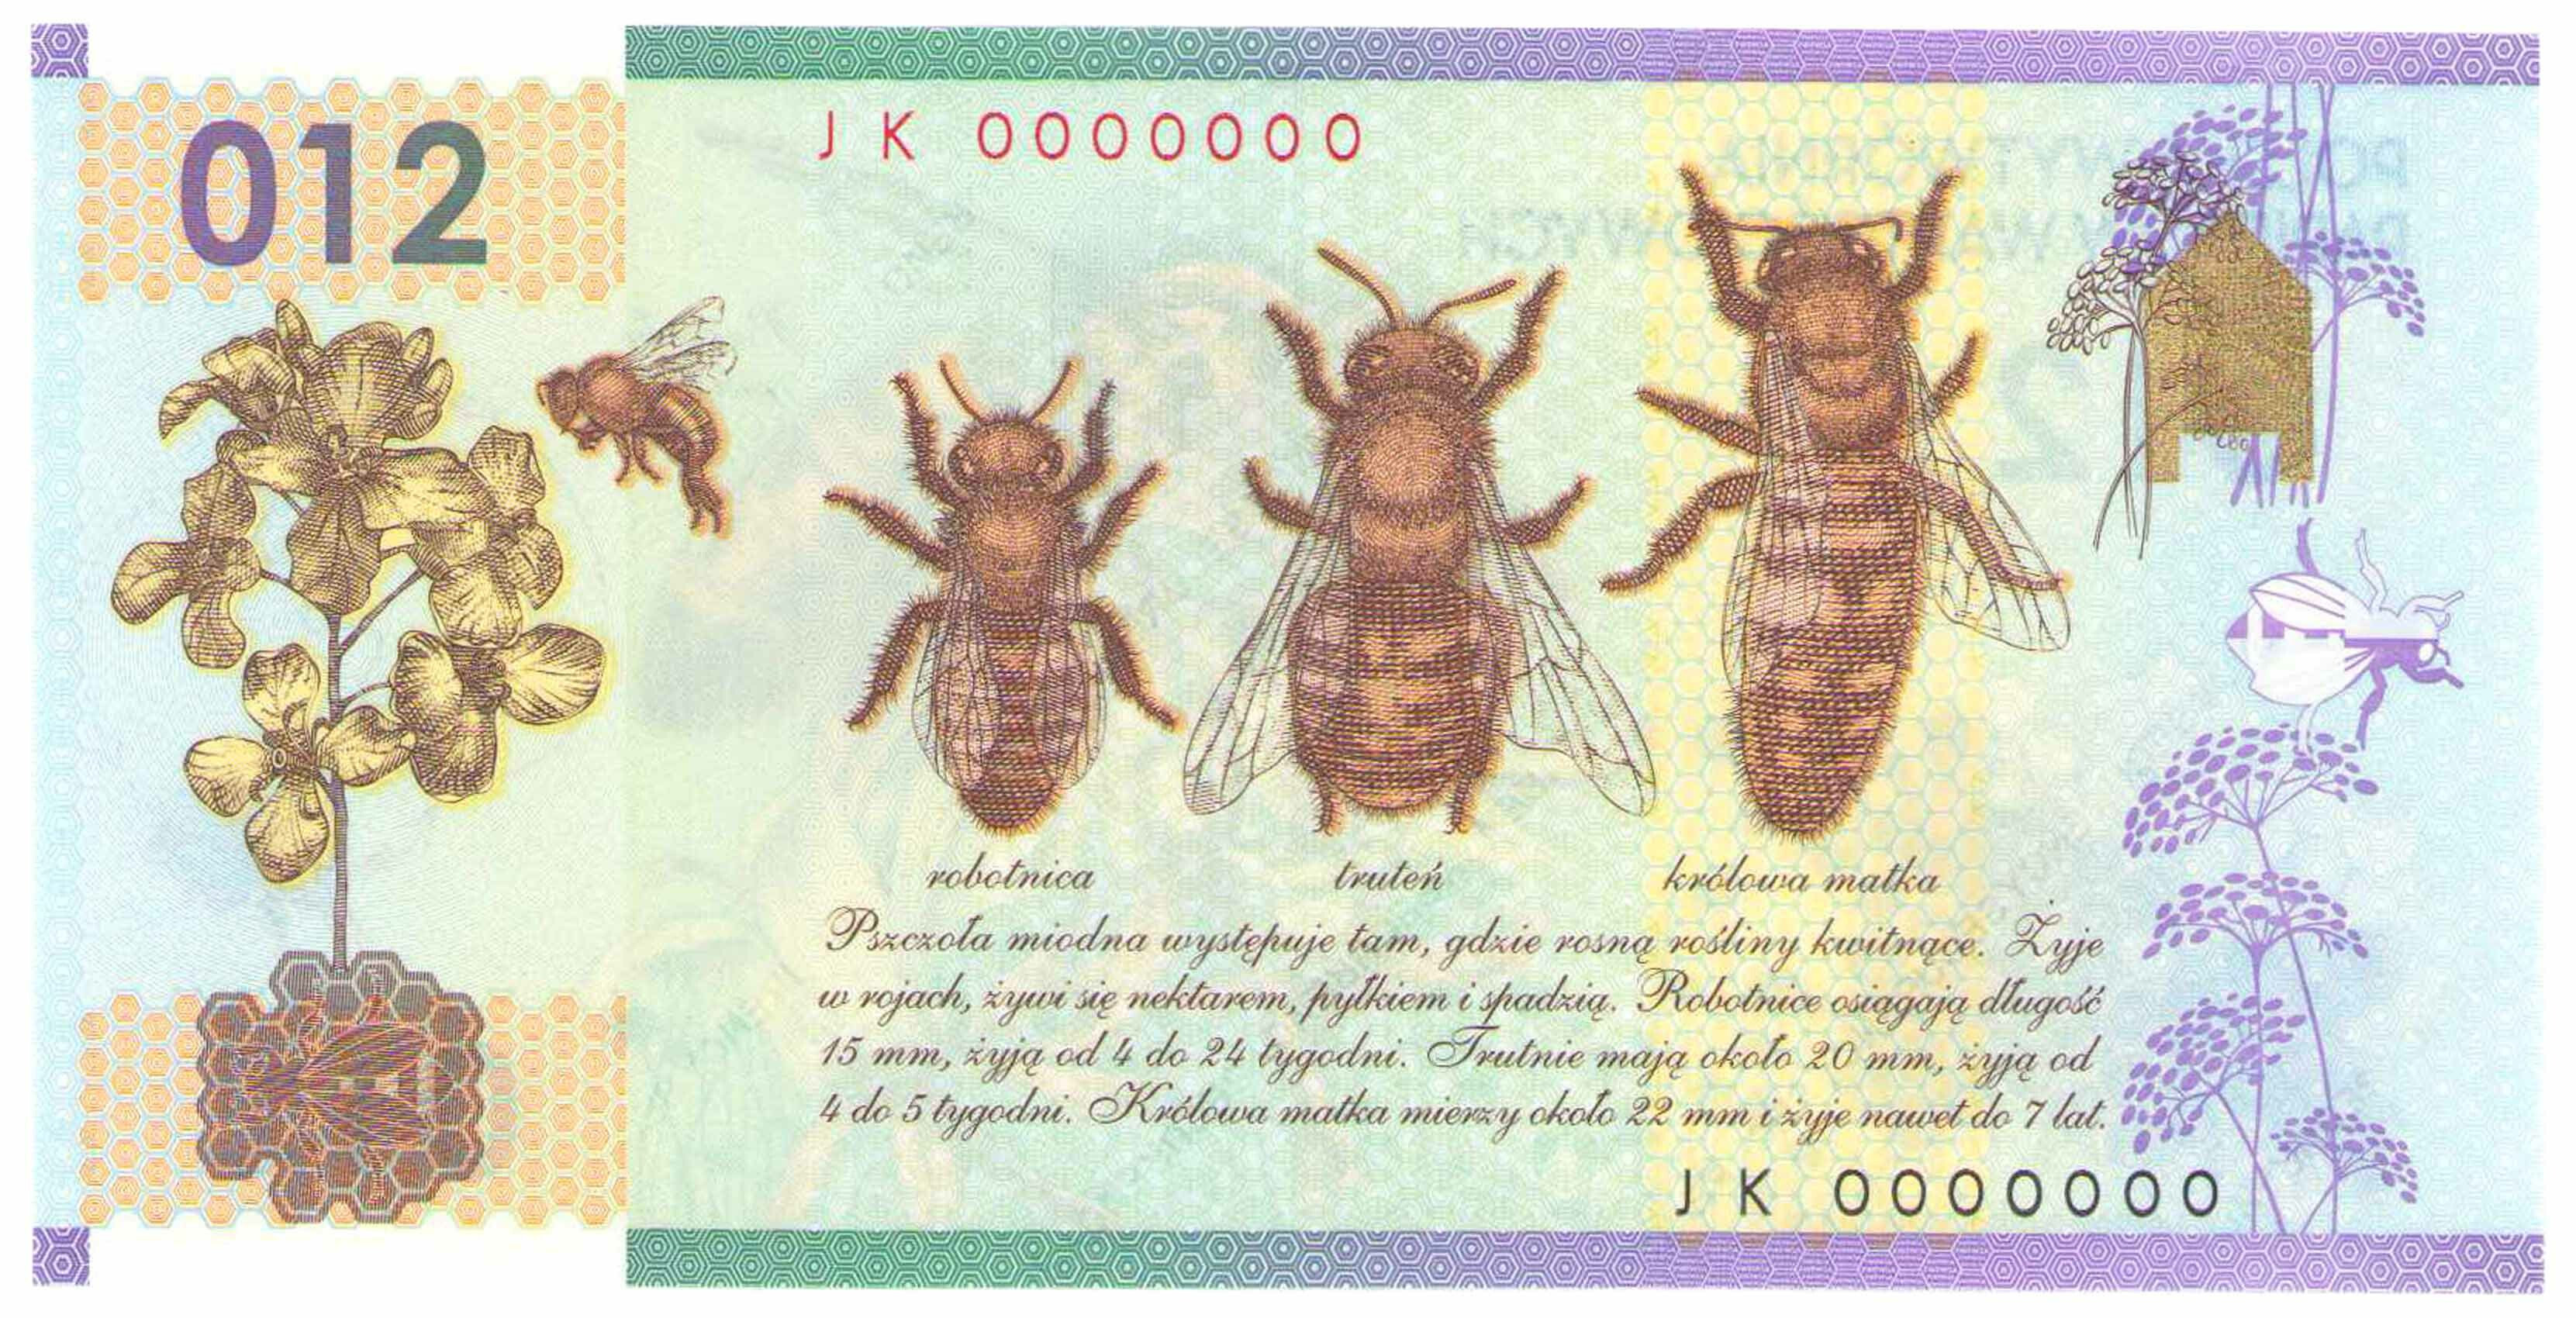 PWPW banknot testowy - 012 - pszczoła miodna